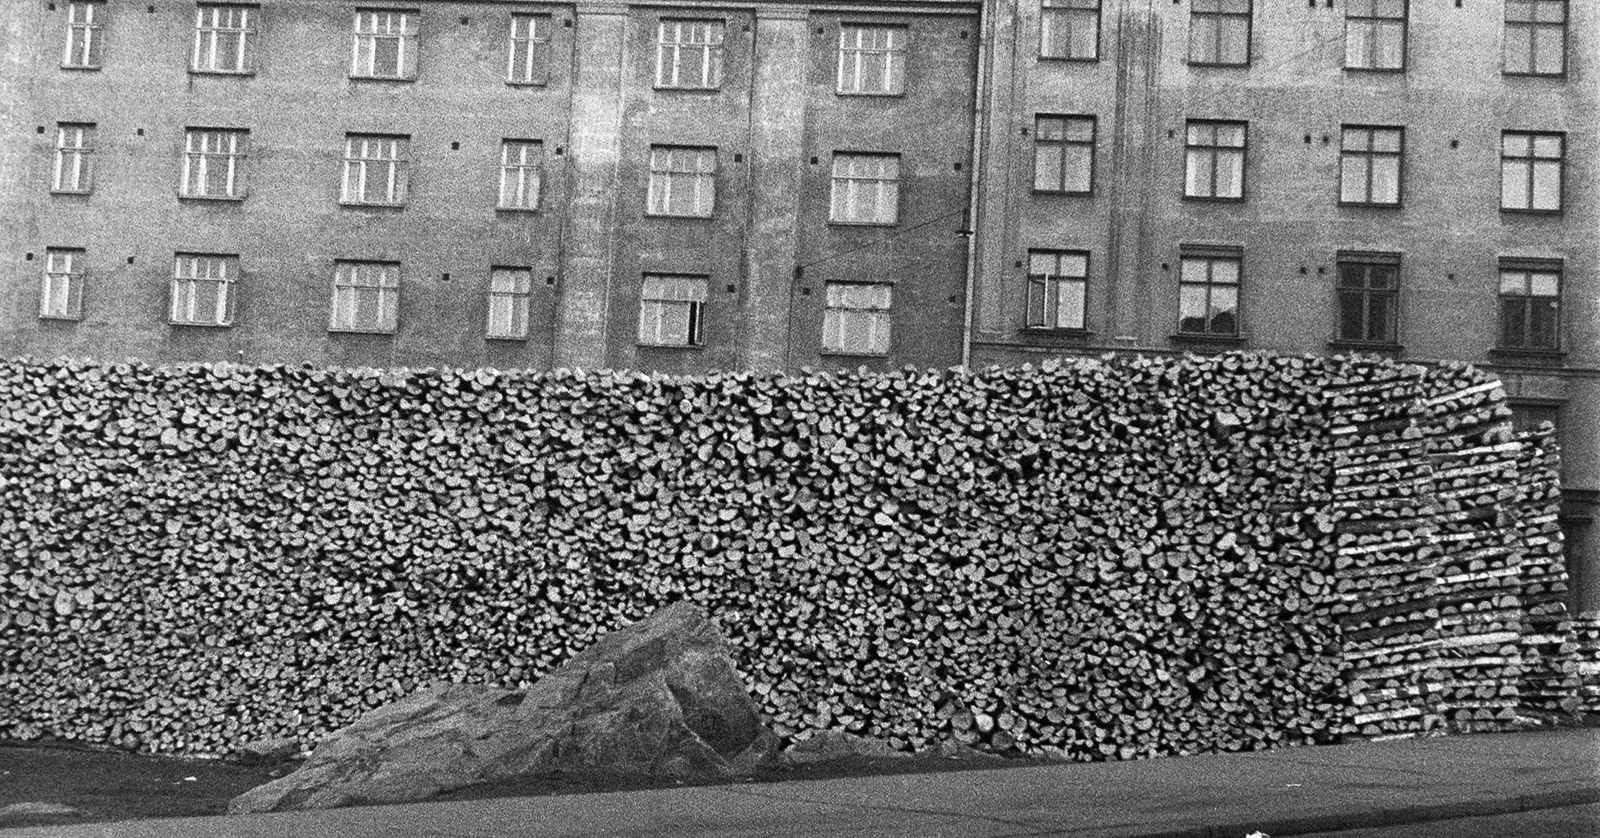 Halkopinot kuuluivat vielä 1960-luvulla normaaliin helsinkiläiseen katukuvaan. Suuri halkopino talon edessä 1950-luvulla, valokuva.